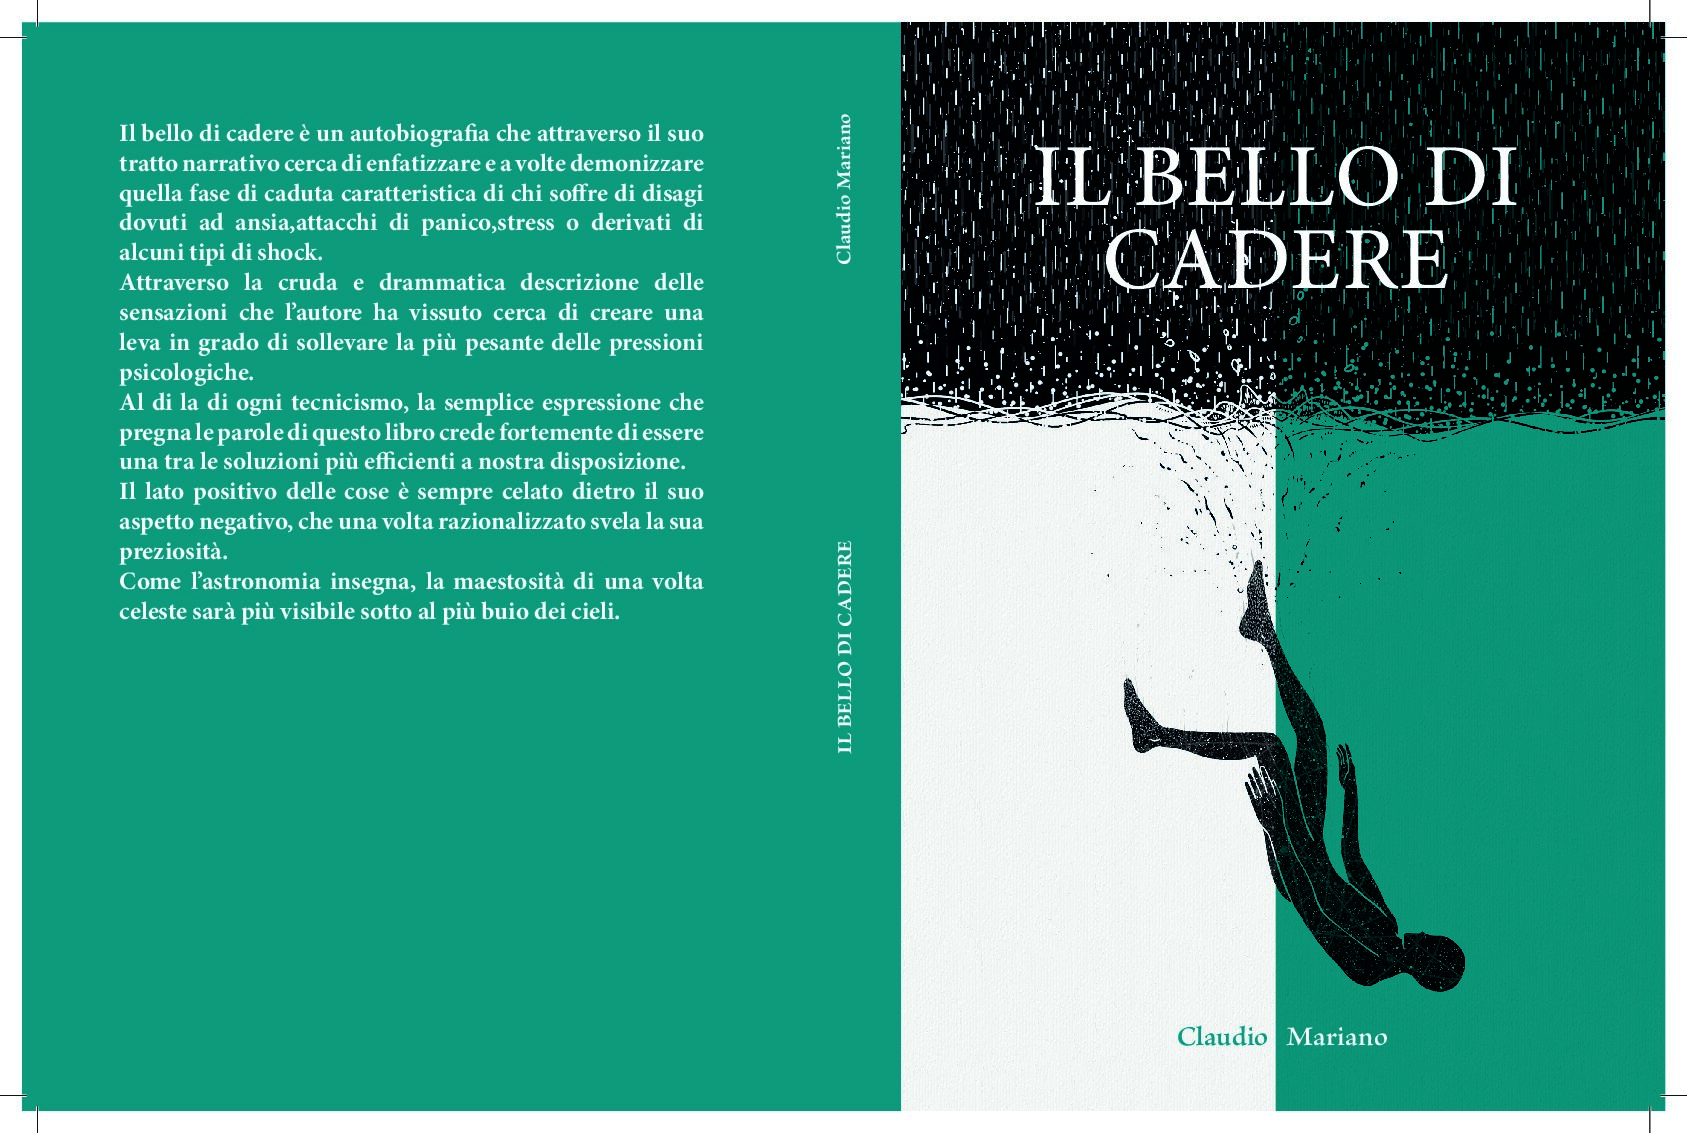 Lo scrittore Claudio Mariano presenta il libro autobiografico “Il bello di cadere”